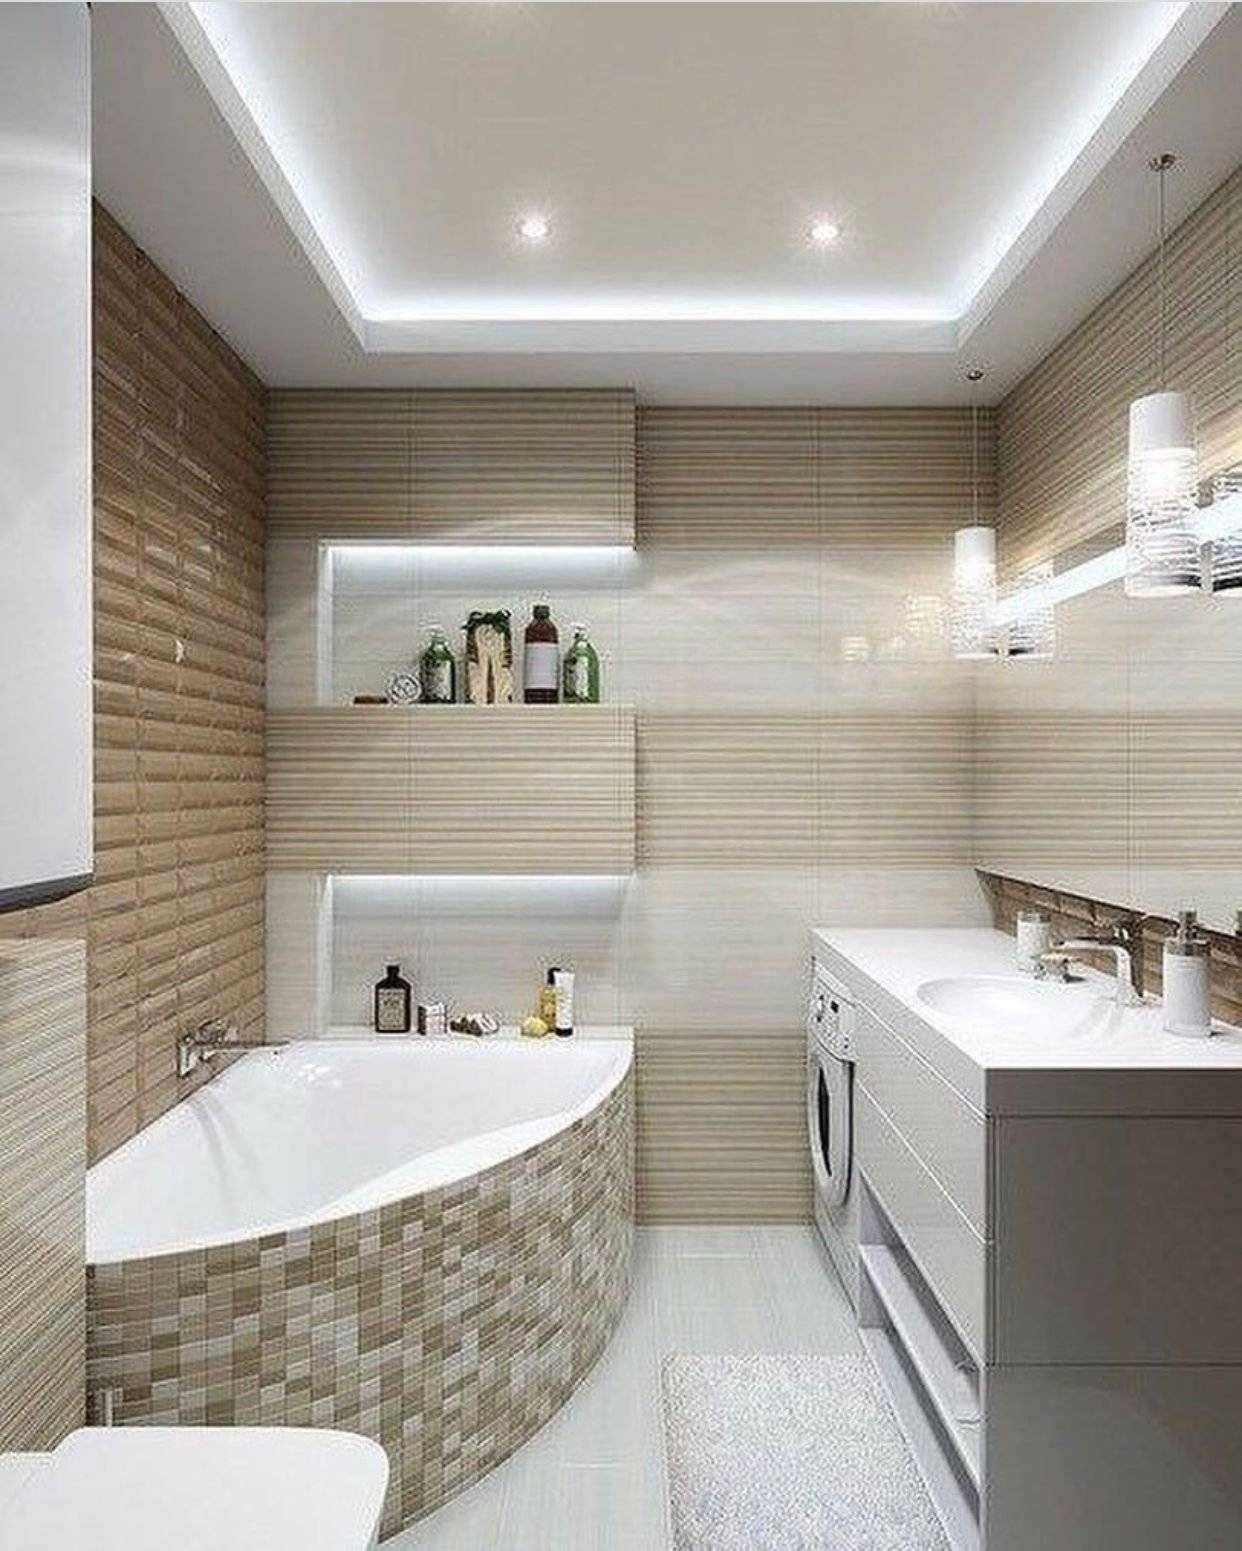 Ванная комната с угловой ванной: фото дизайна, интерьер маленькой комнаты без туалета, в панельном доме